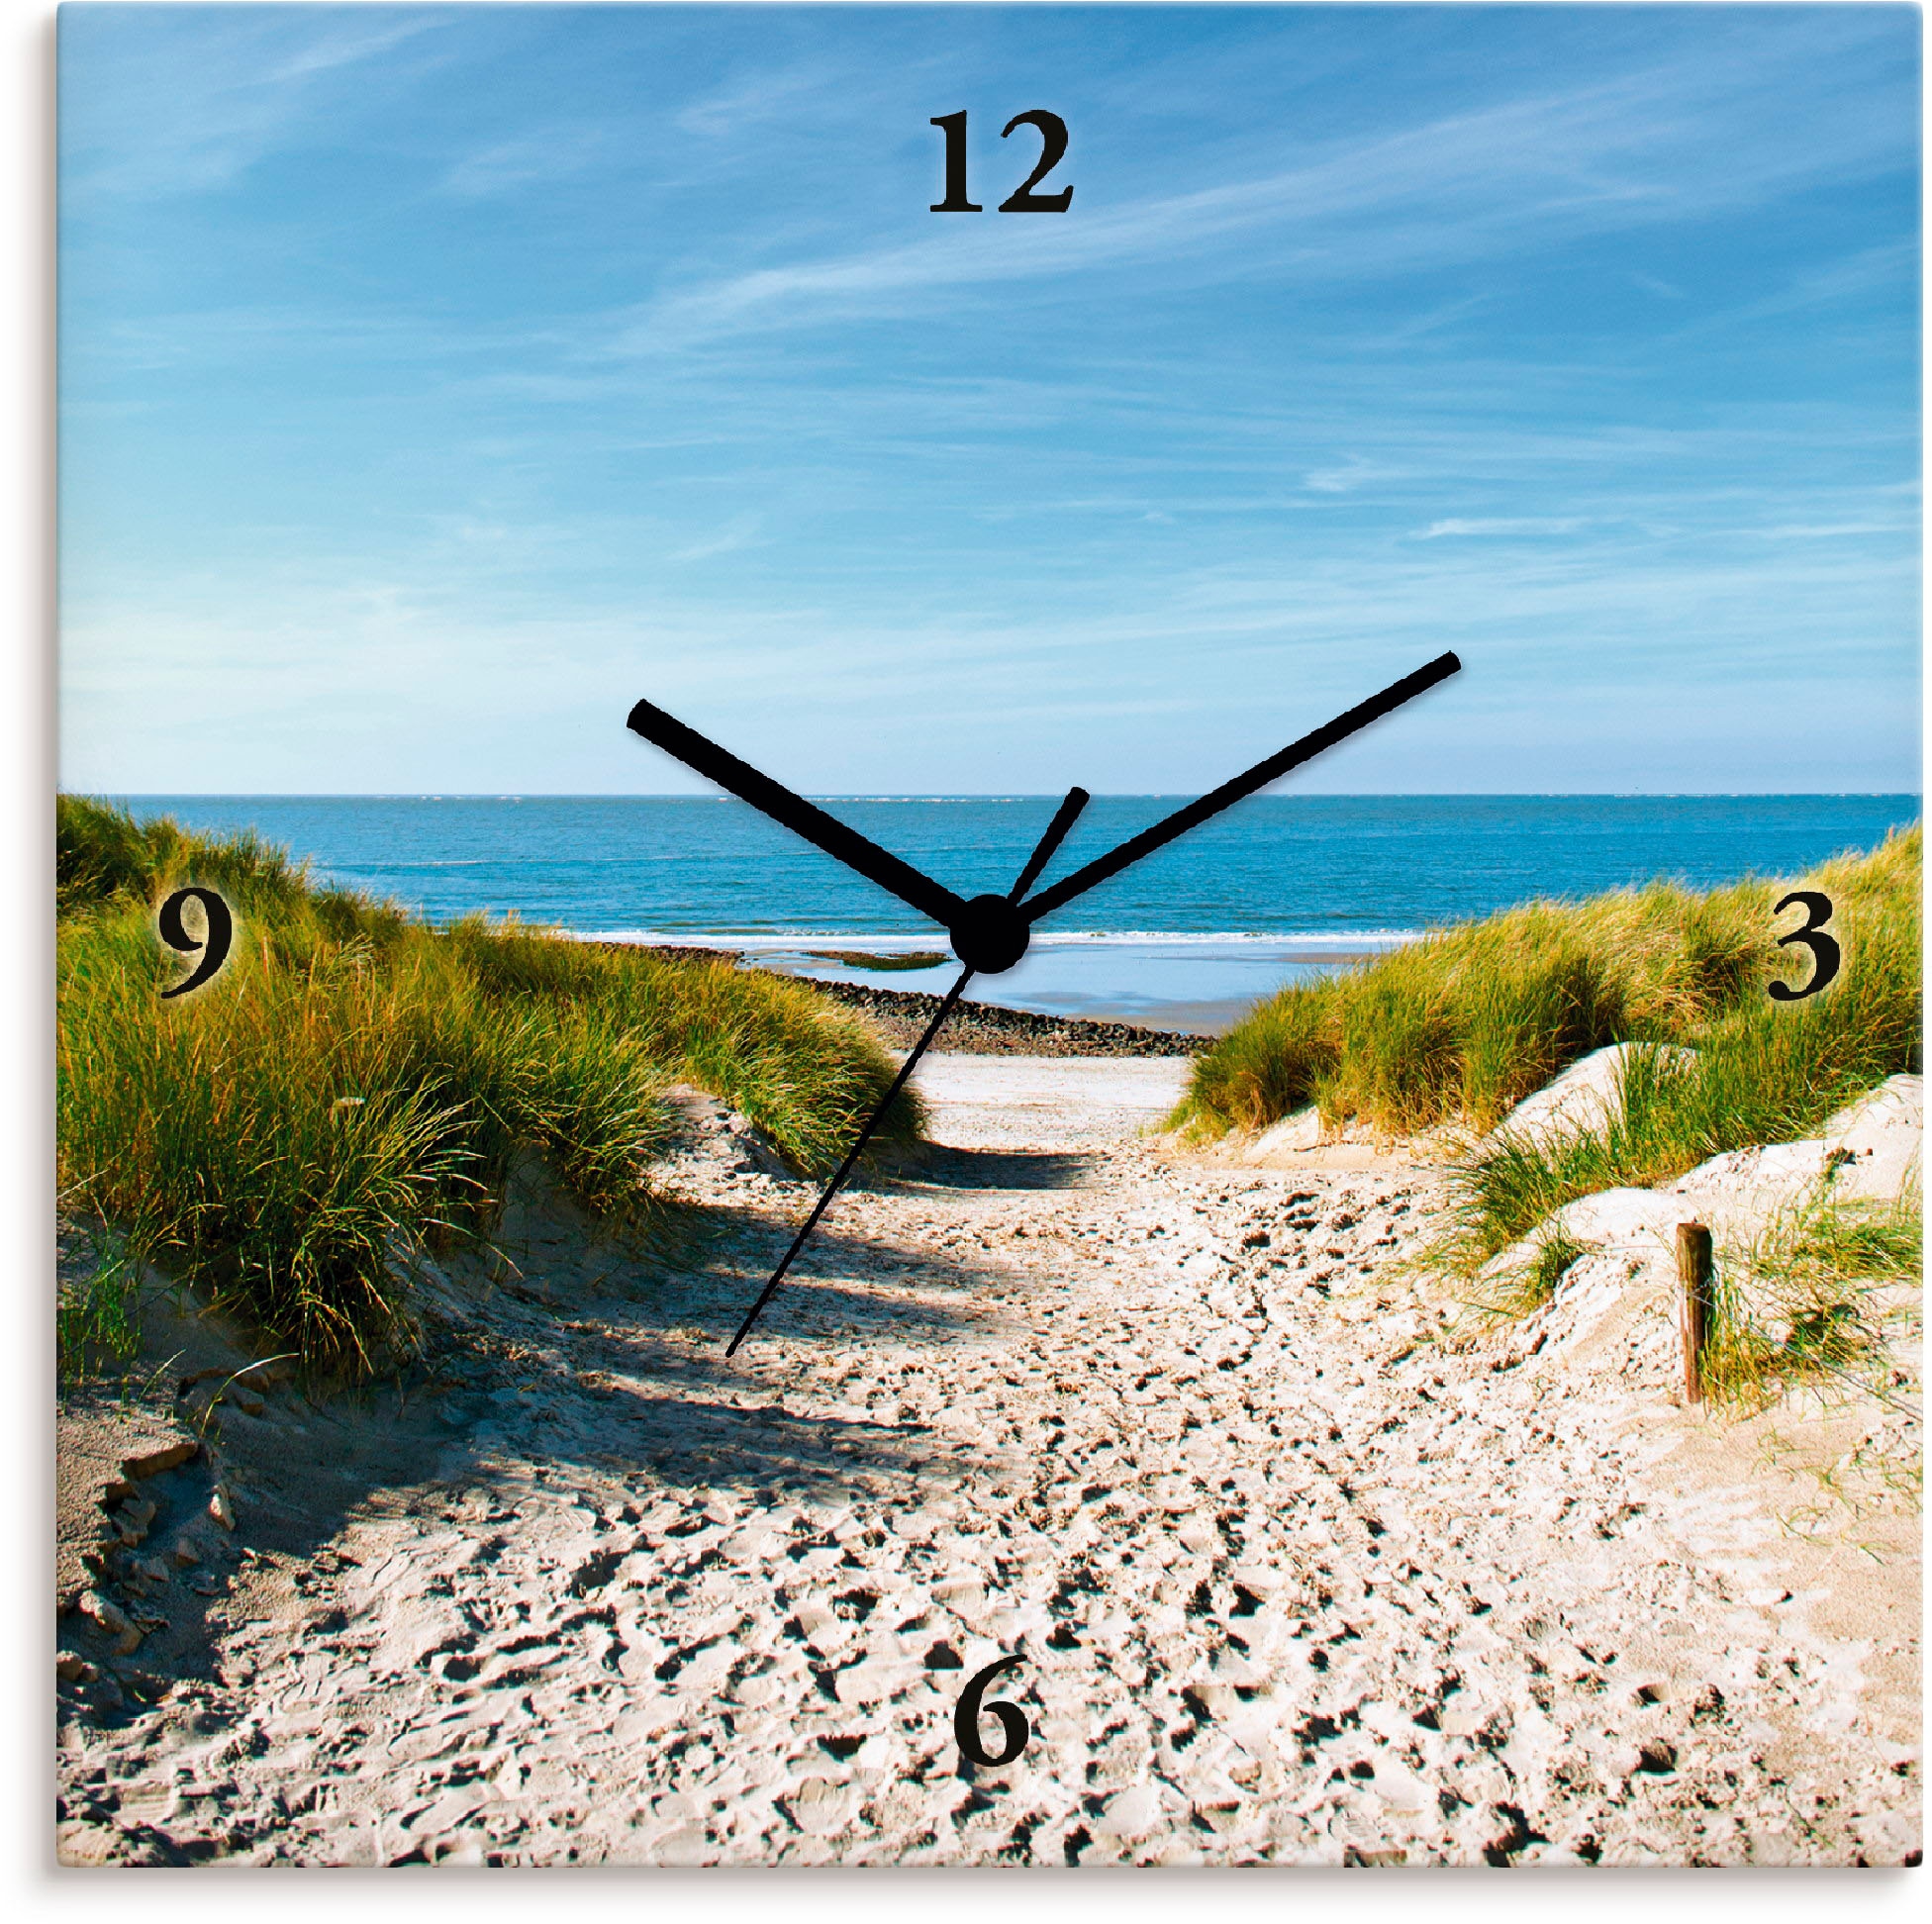 Artland Wanduhr "Strand mit Sanddünen und Weg zur See", wahlweise mit Quarz- oder Funkuhrwerk, lautlos ohne Tickgeräusch